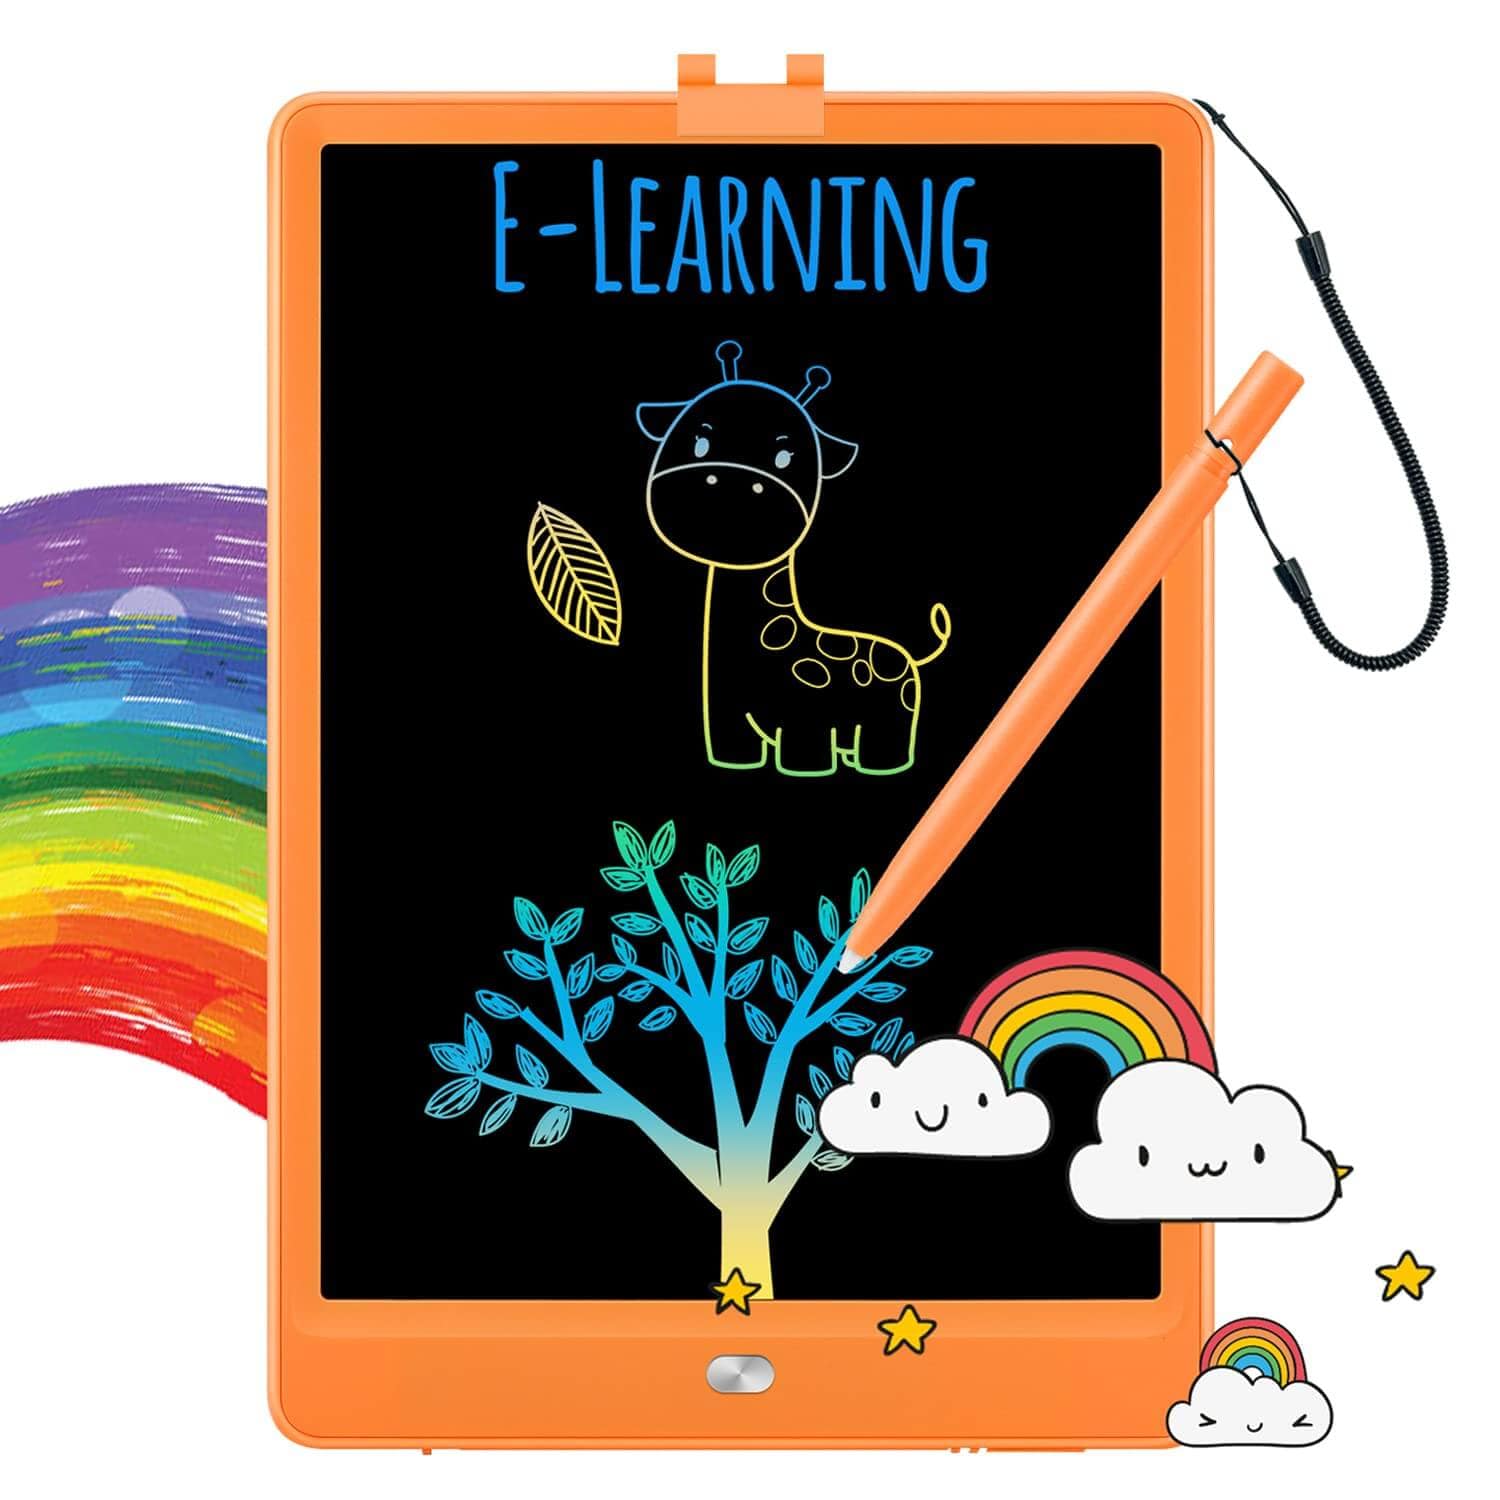 TEKFUN LCD Writing Tablet Doodle Board, 10inch Colorful Drawing Tablet Writing Pad - Mytekfun